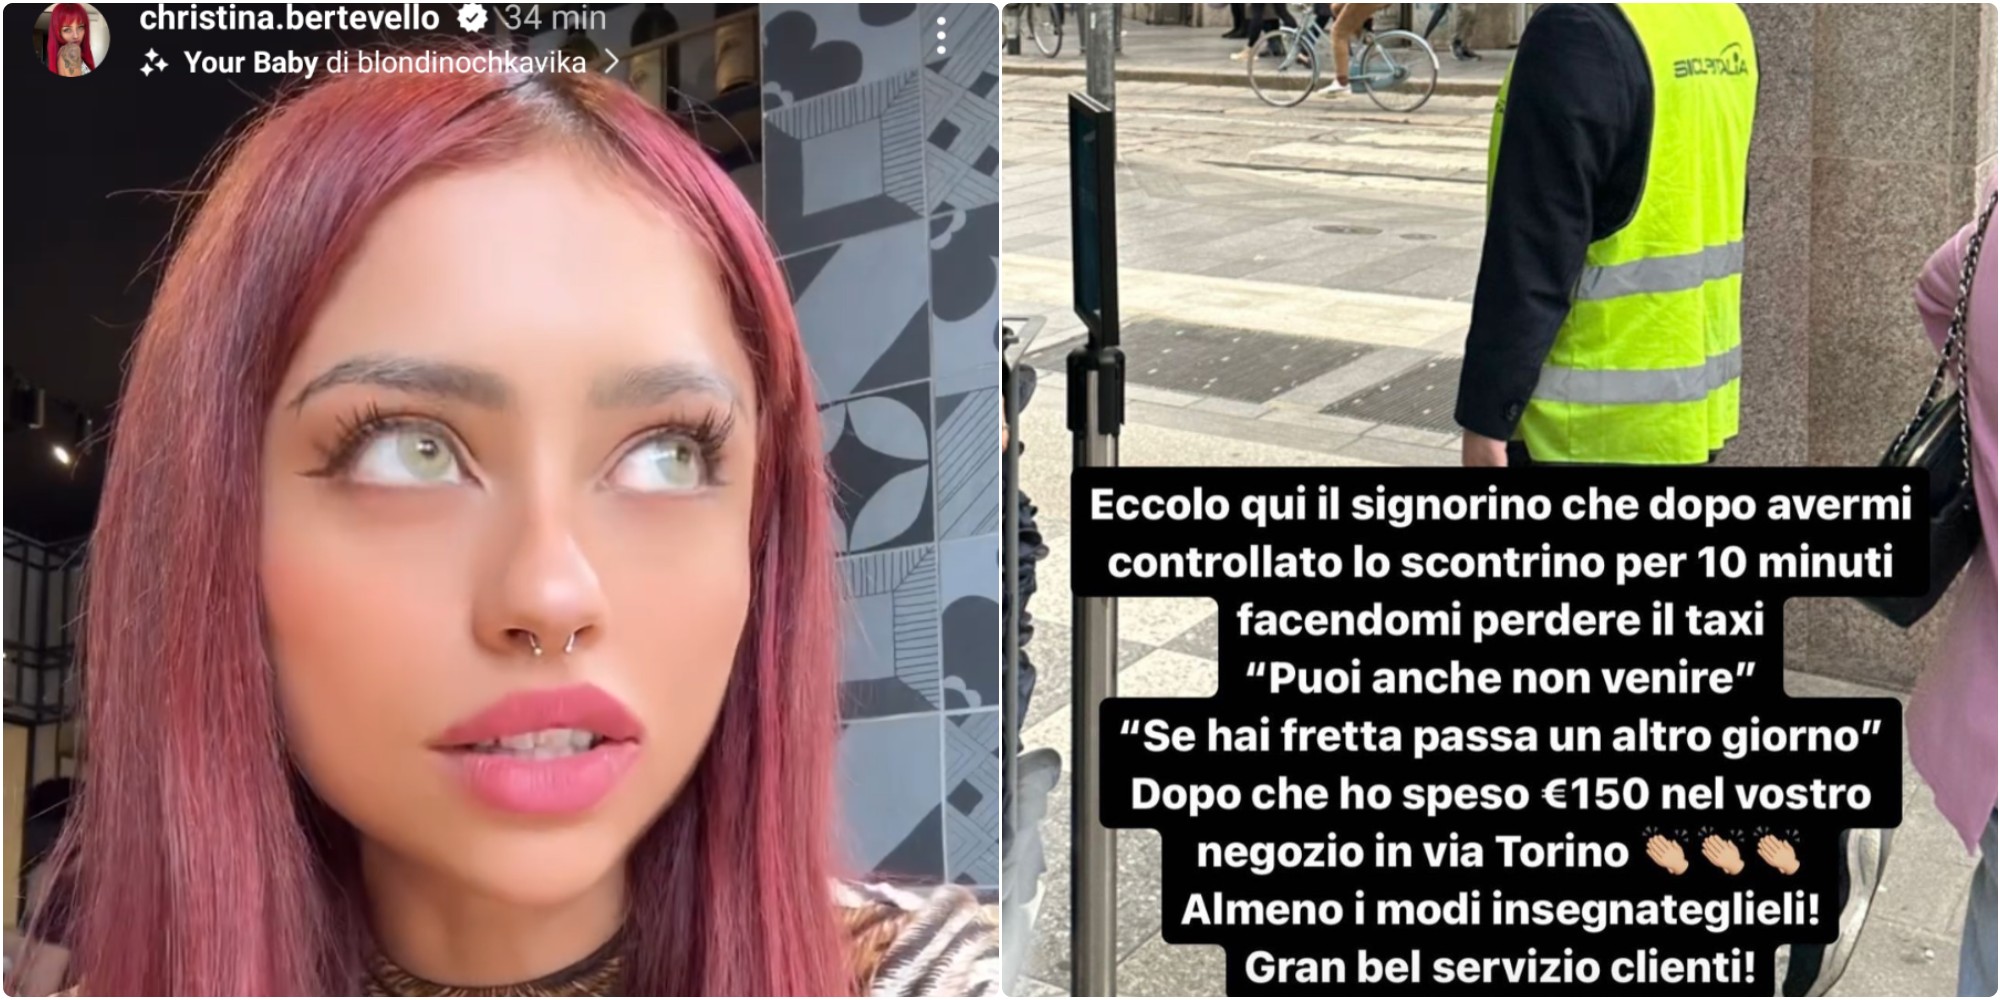 Christina Bertevello e la disavventura con il dipendente Primark in via Torino, a Milano. Fonte: christina.bertevello - Instagram